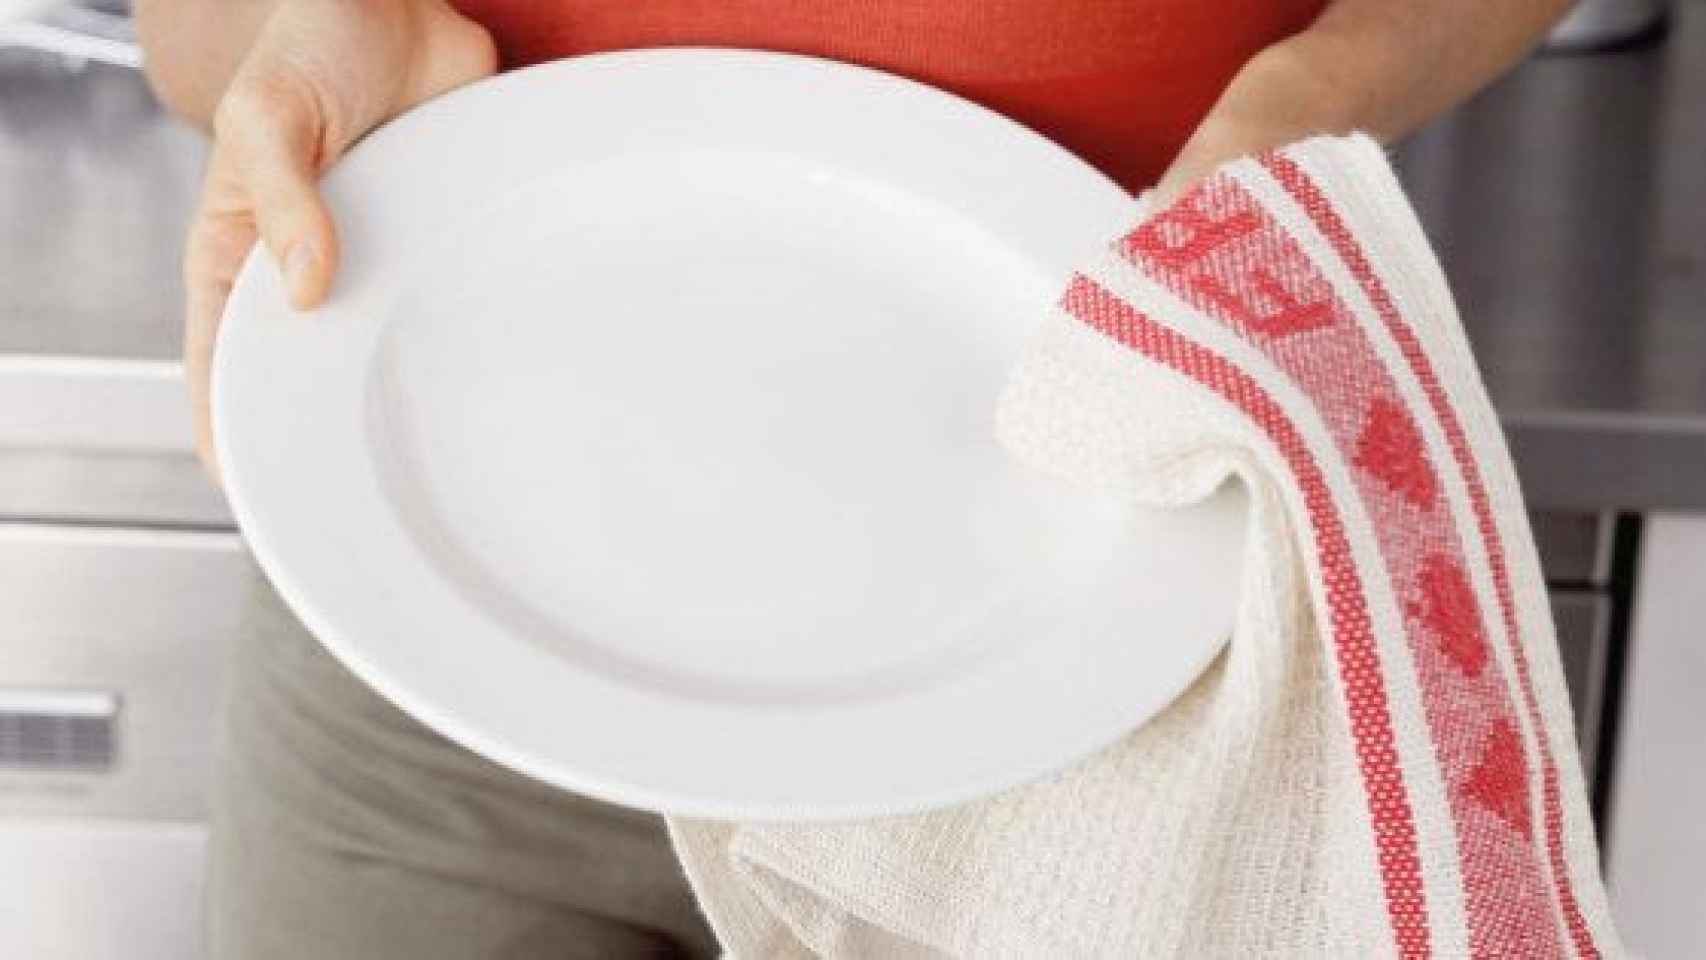 Trapos de cocina, un peligro potencial para tu salud estomacal